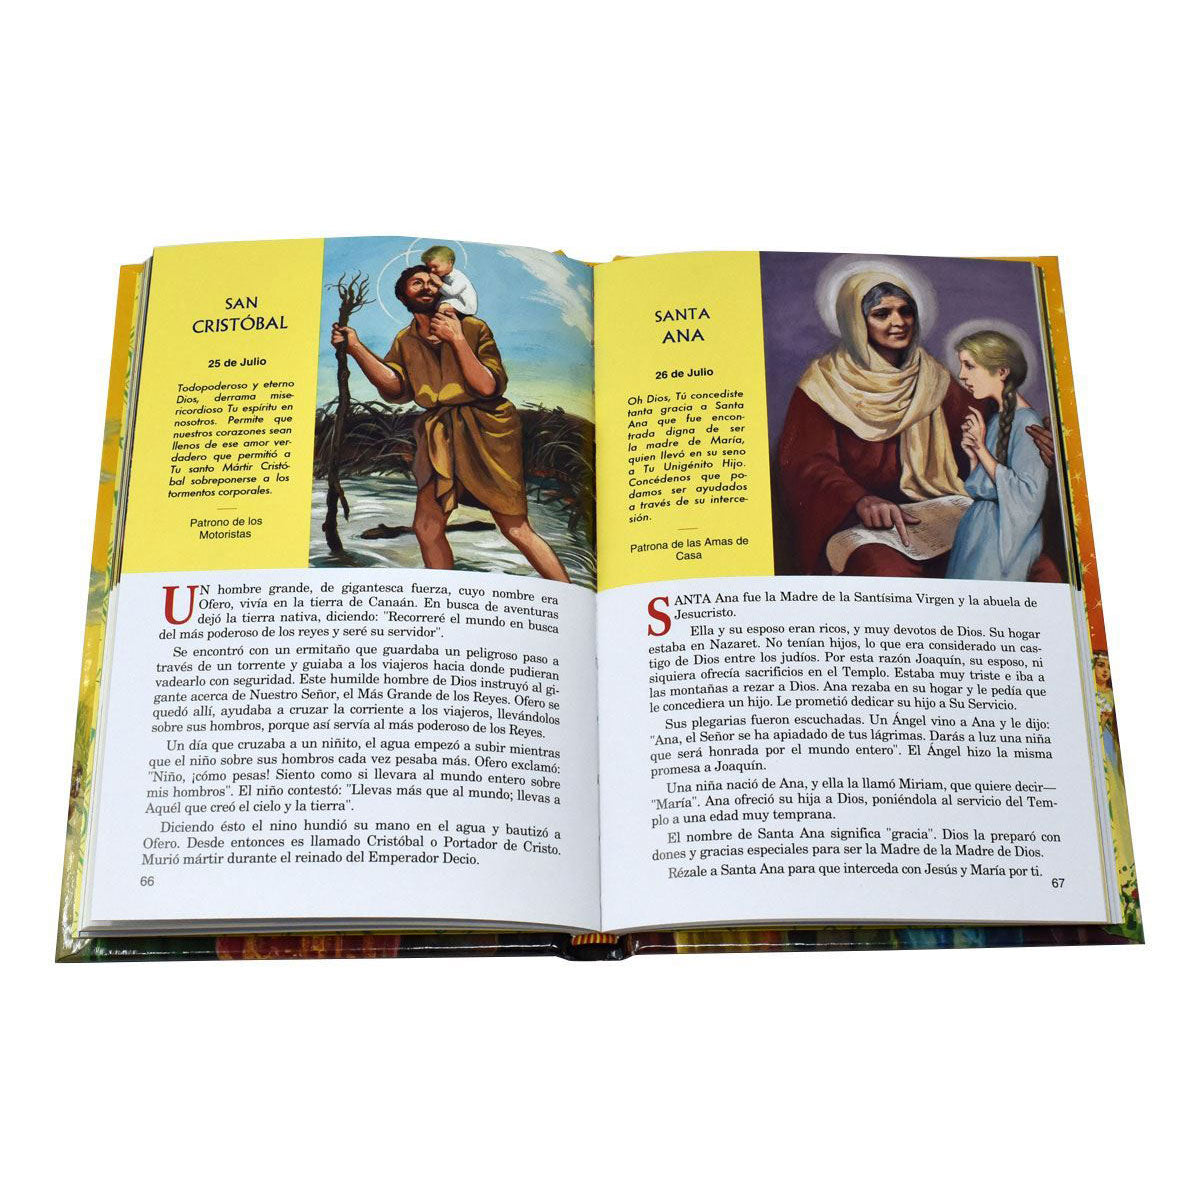 Livre d&#39;images des saints